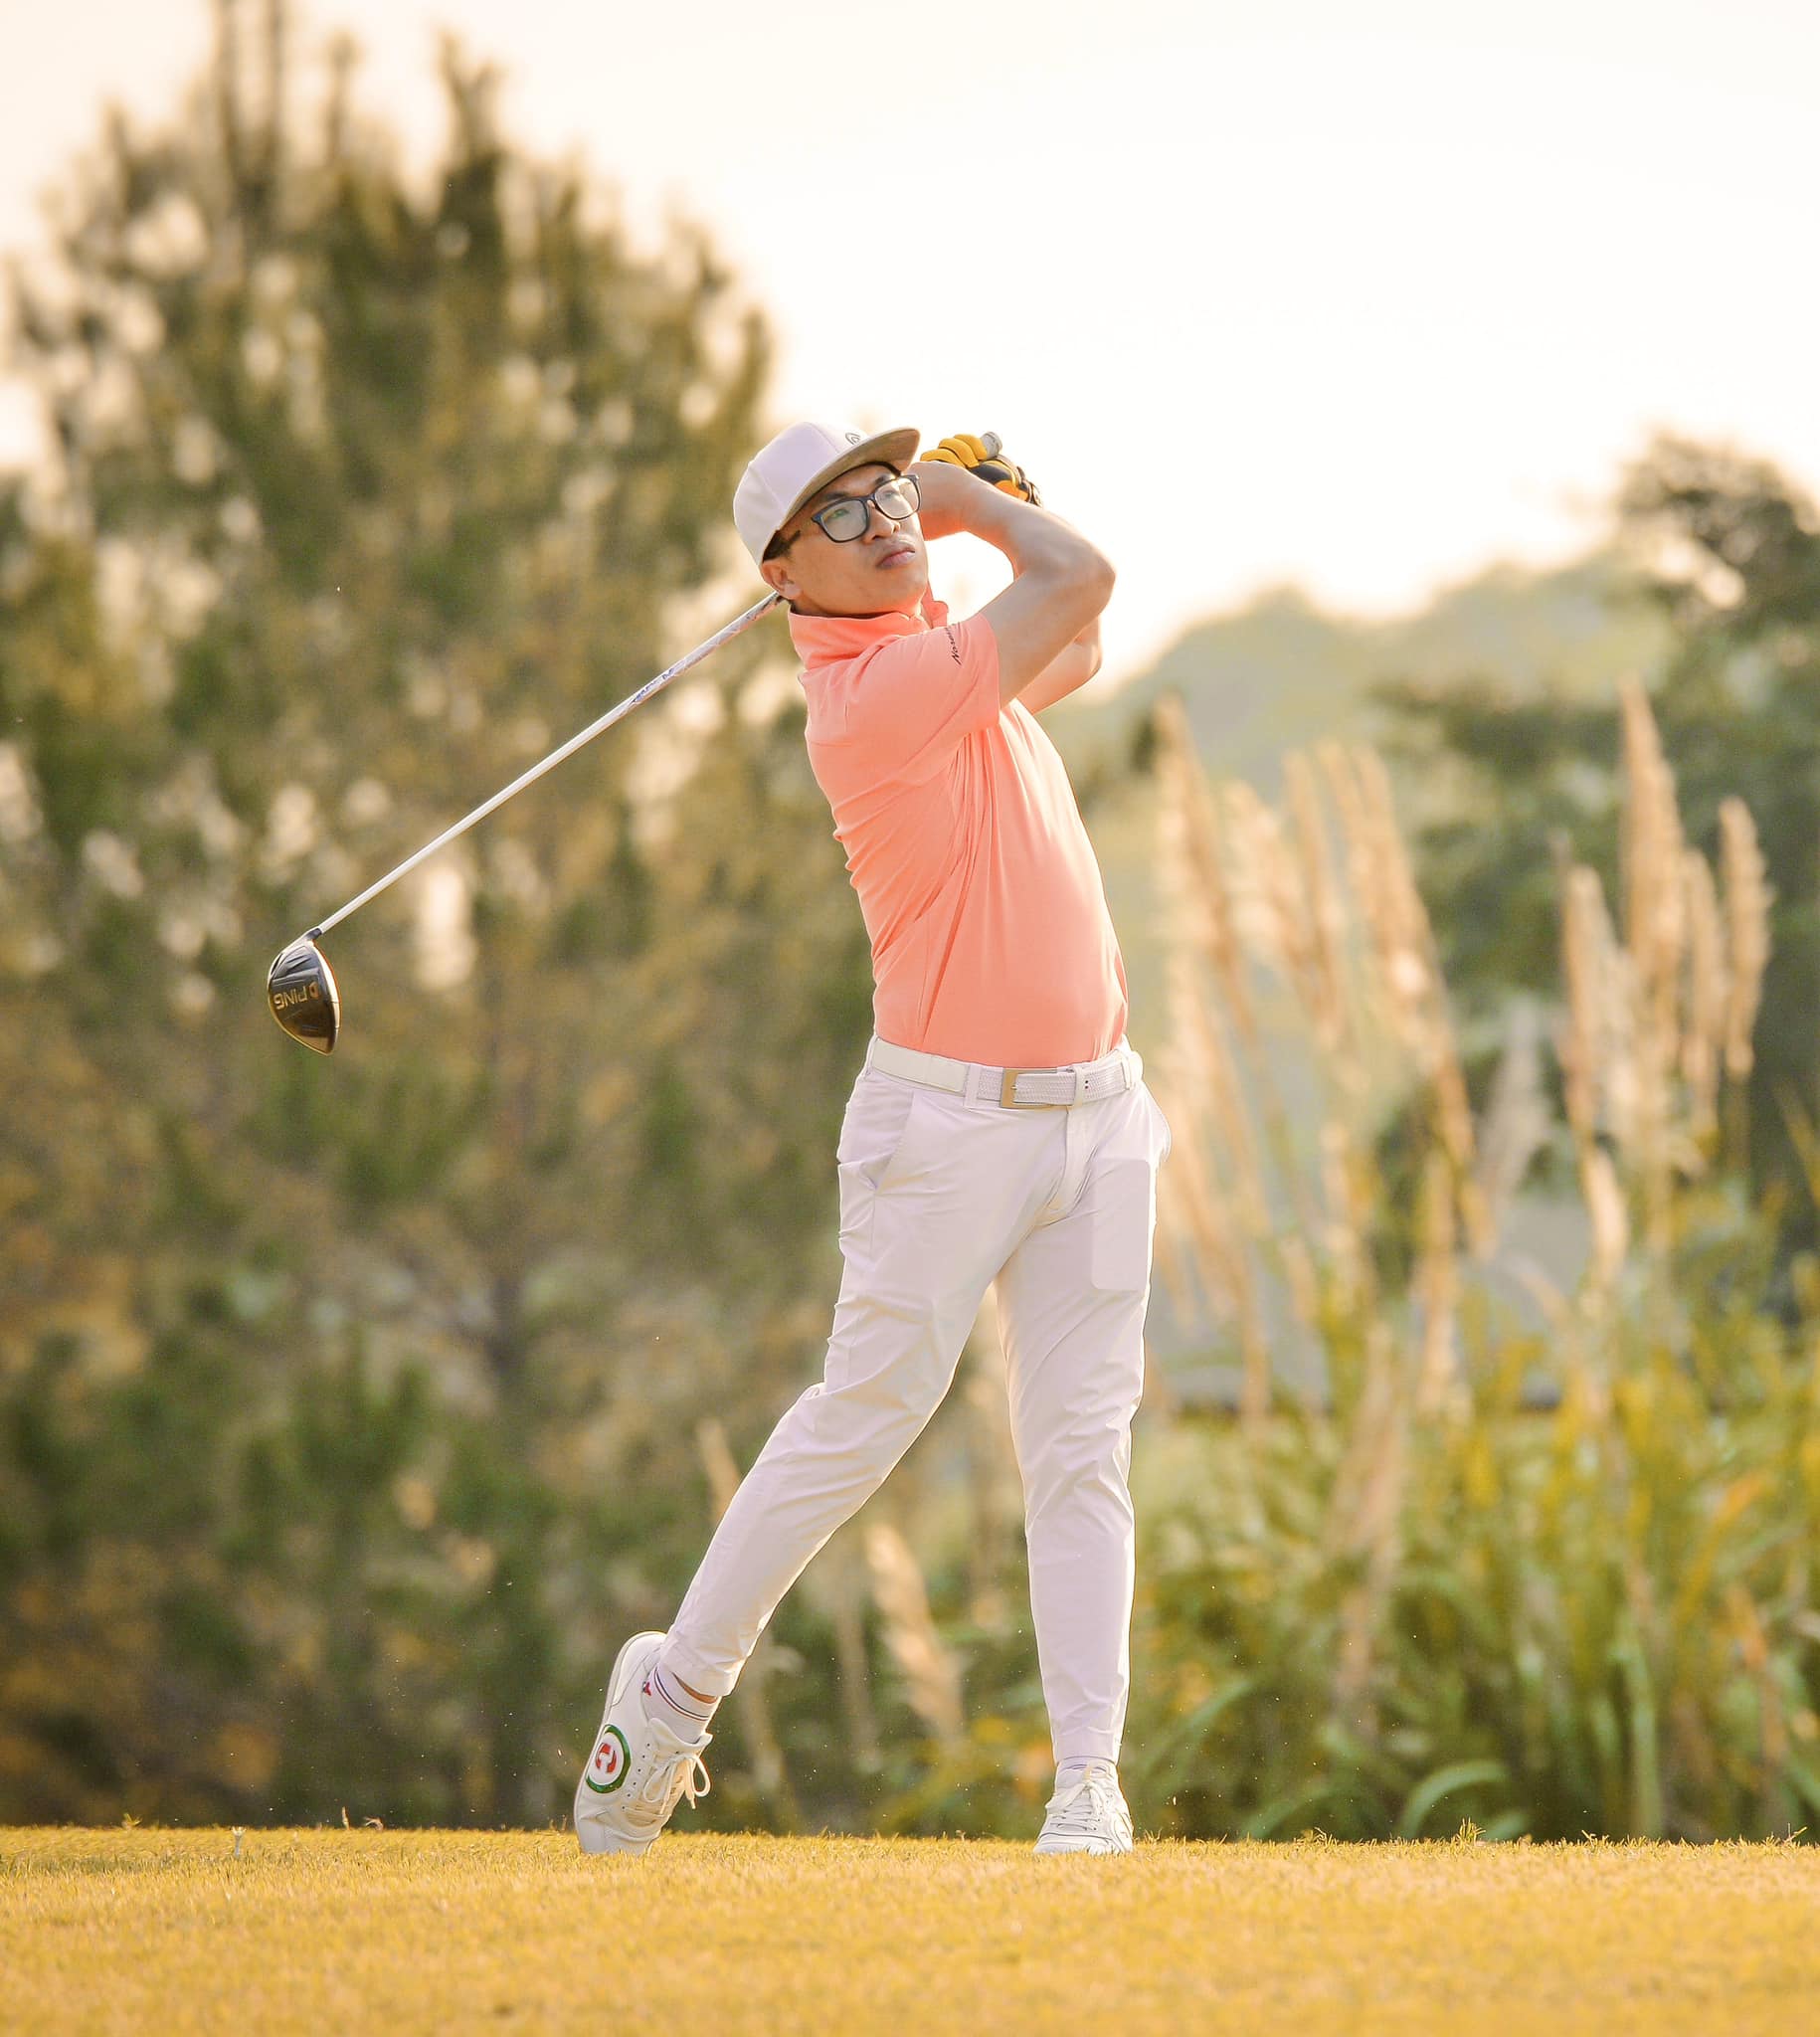 Bình luận viên Golf Giang Nam: Golf chính là bộ môn “yoga não”, khi chơi hay giữ tâm trí trống rỗng và thoải mái - Ảnh 2.